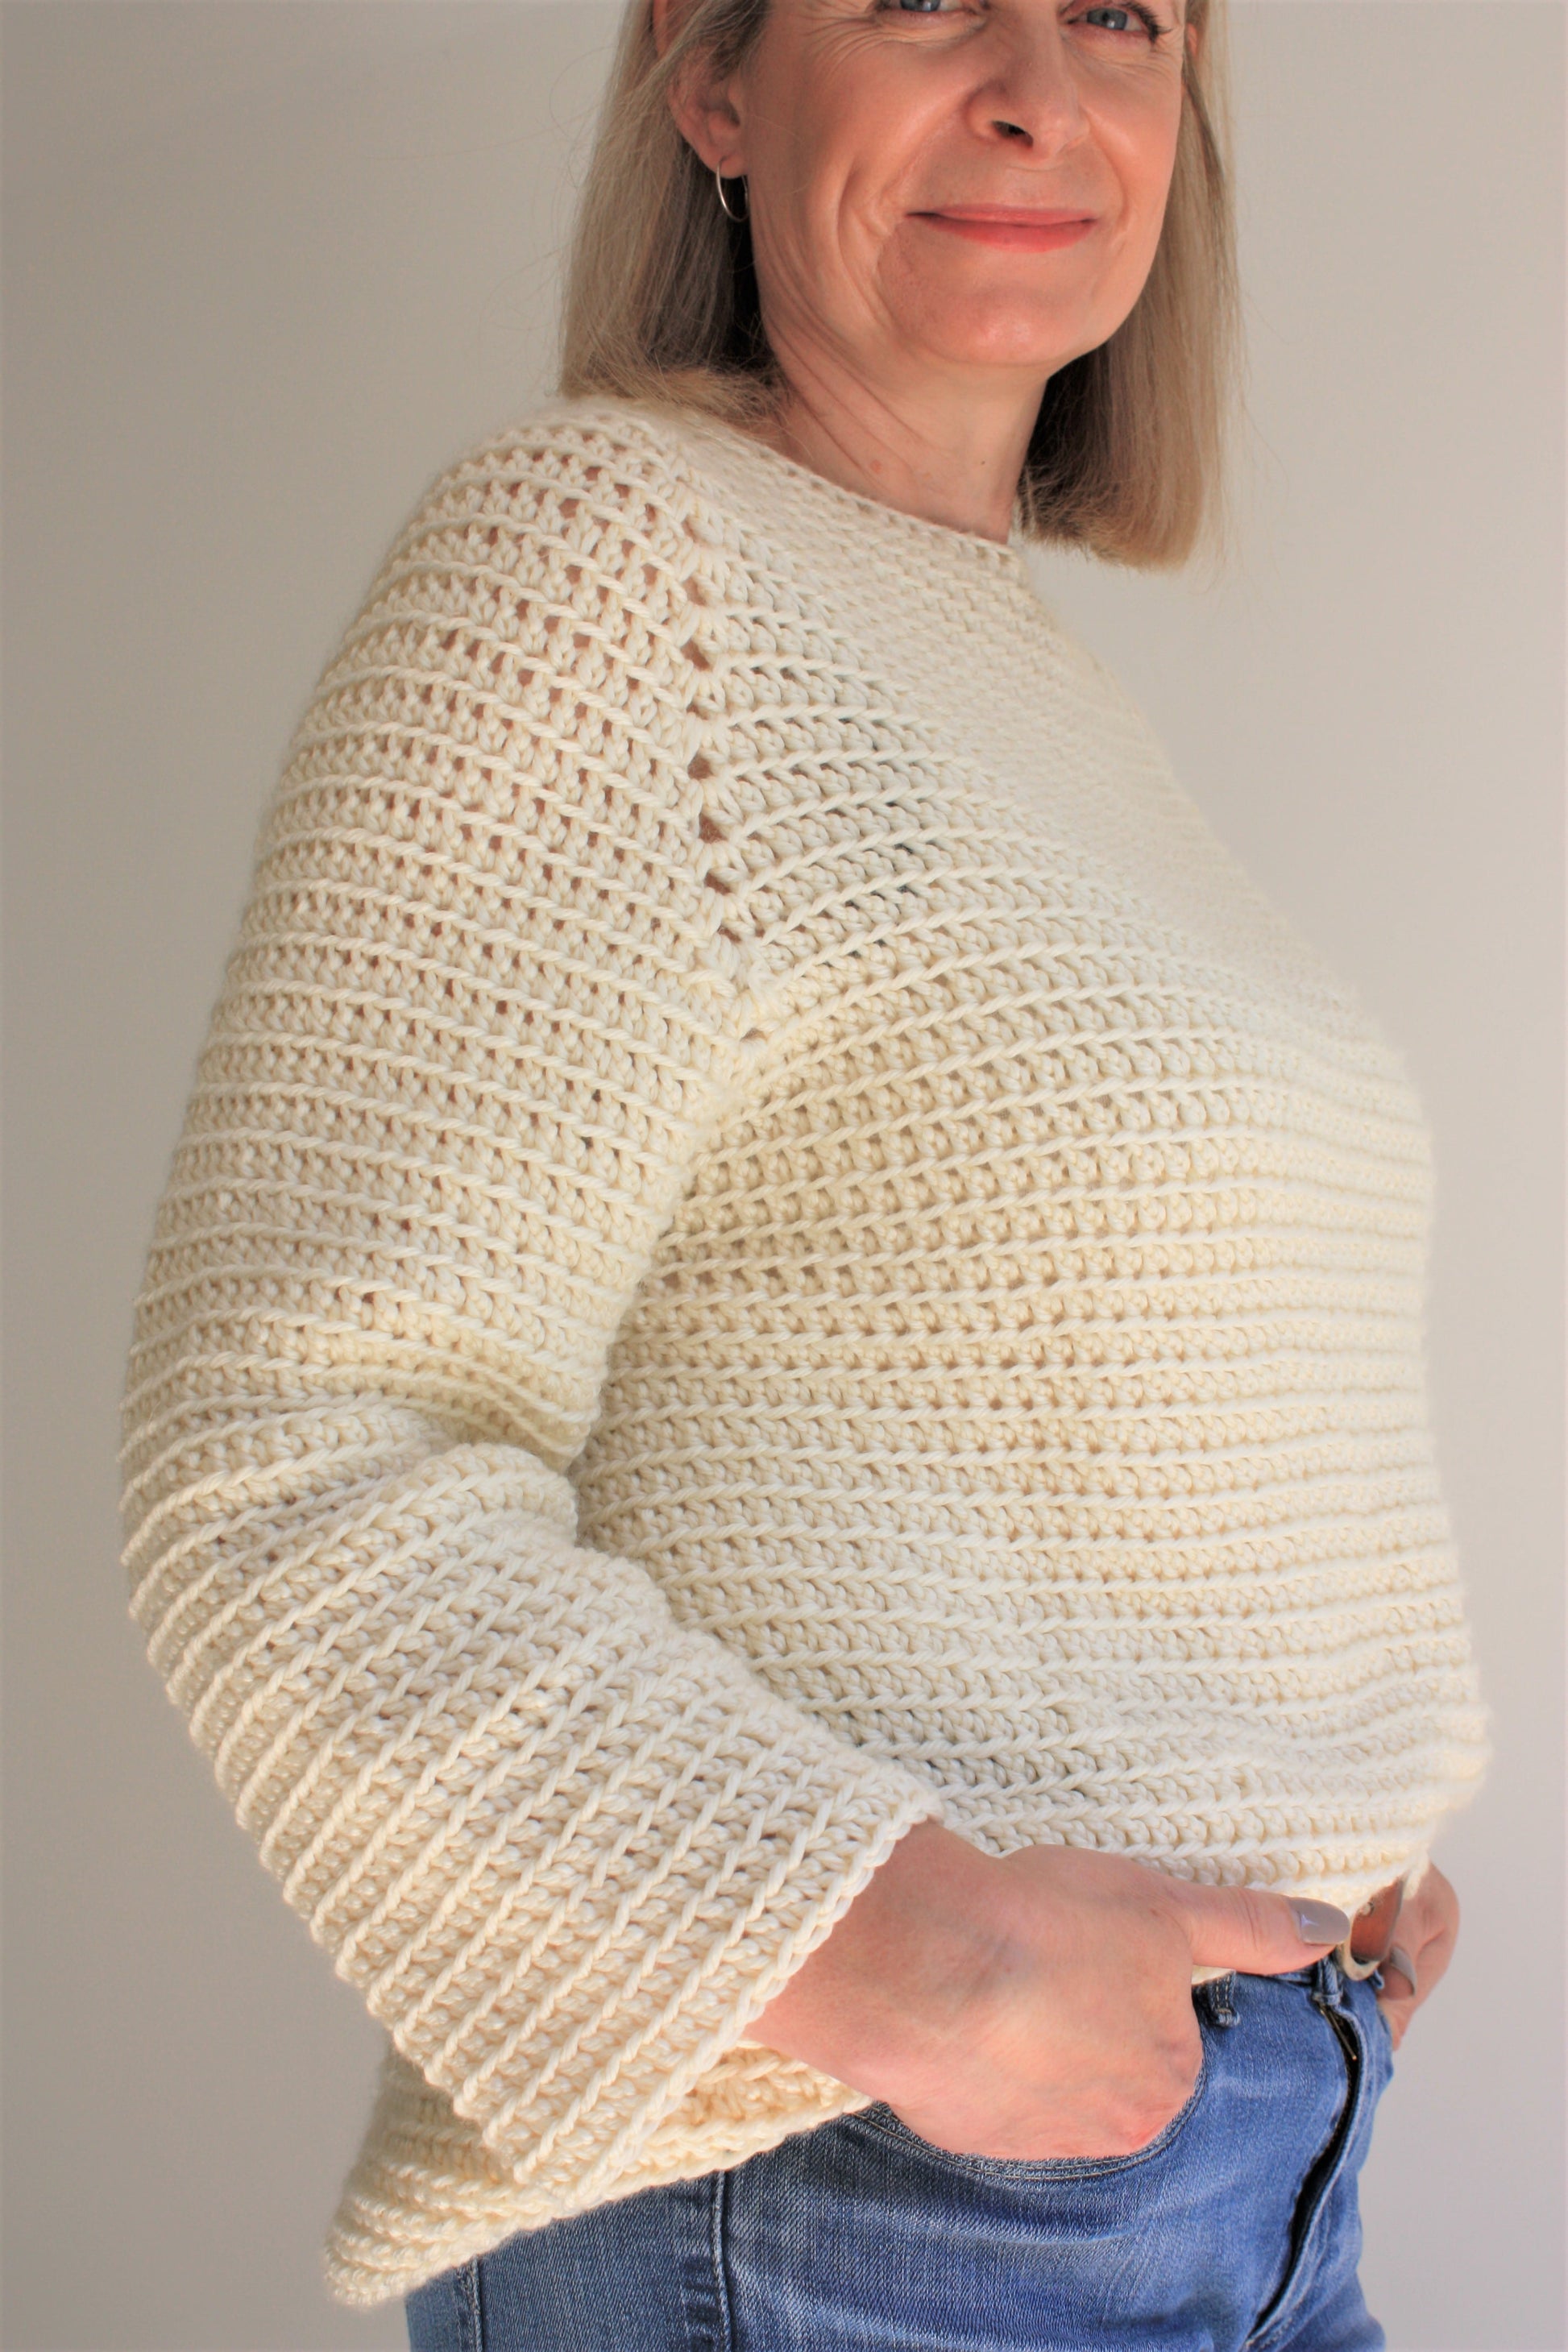 Easy Crochet Pattern - Top Down Raglan | St Ives Slouchy Sweater - King & Eye